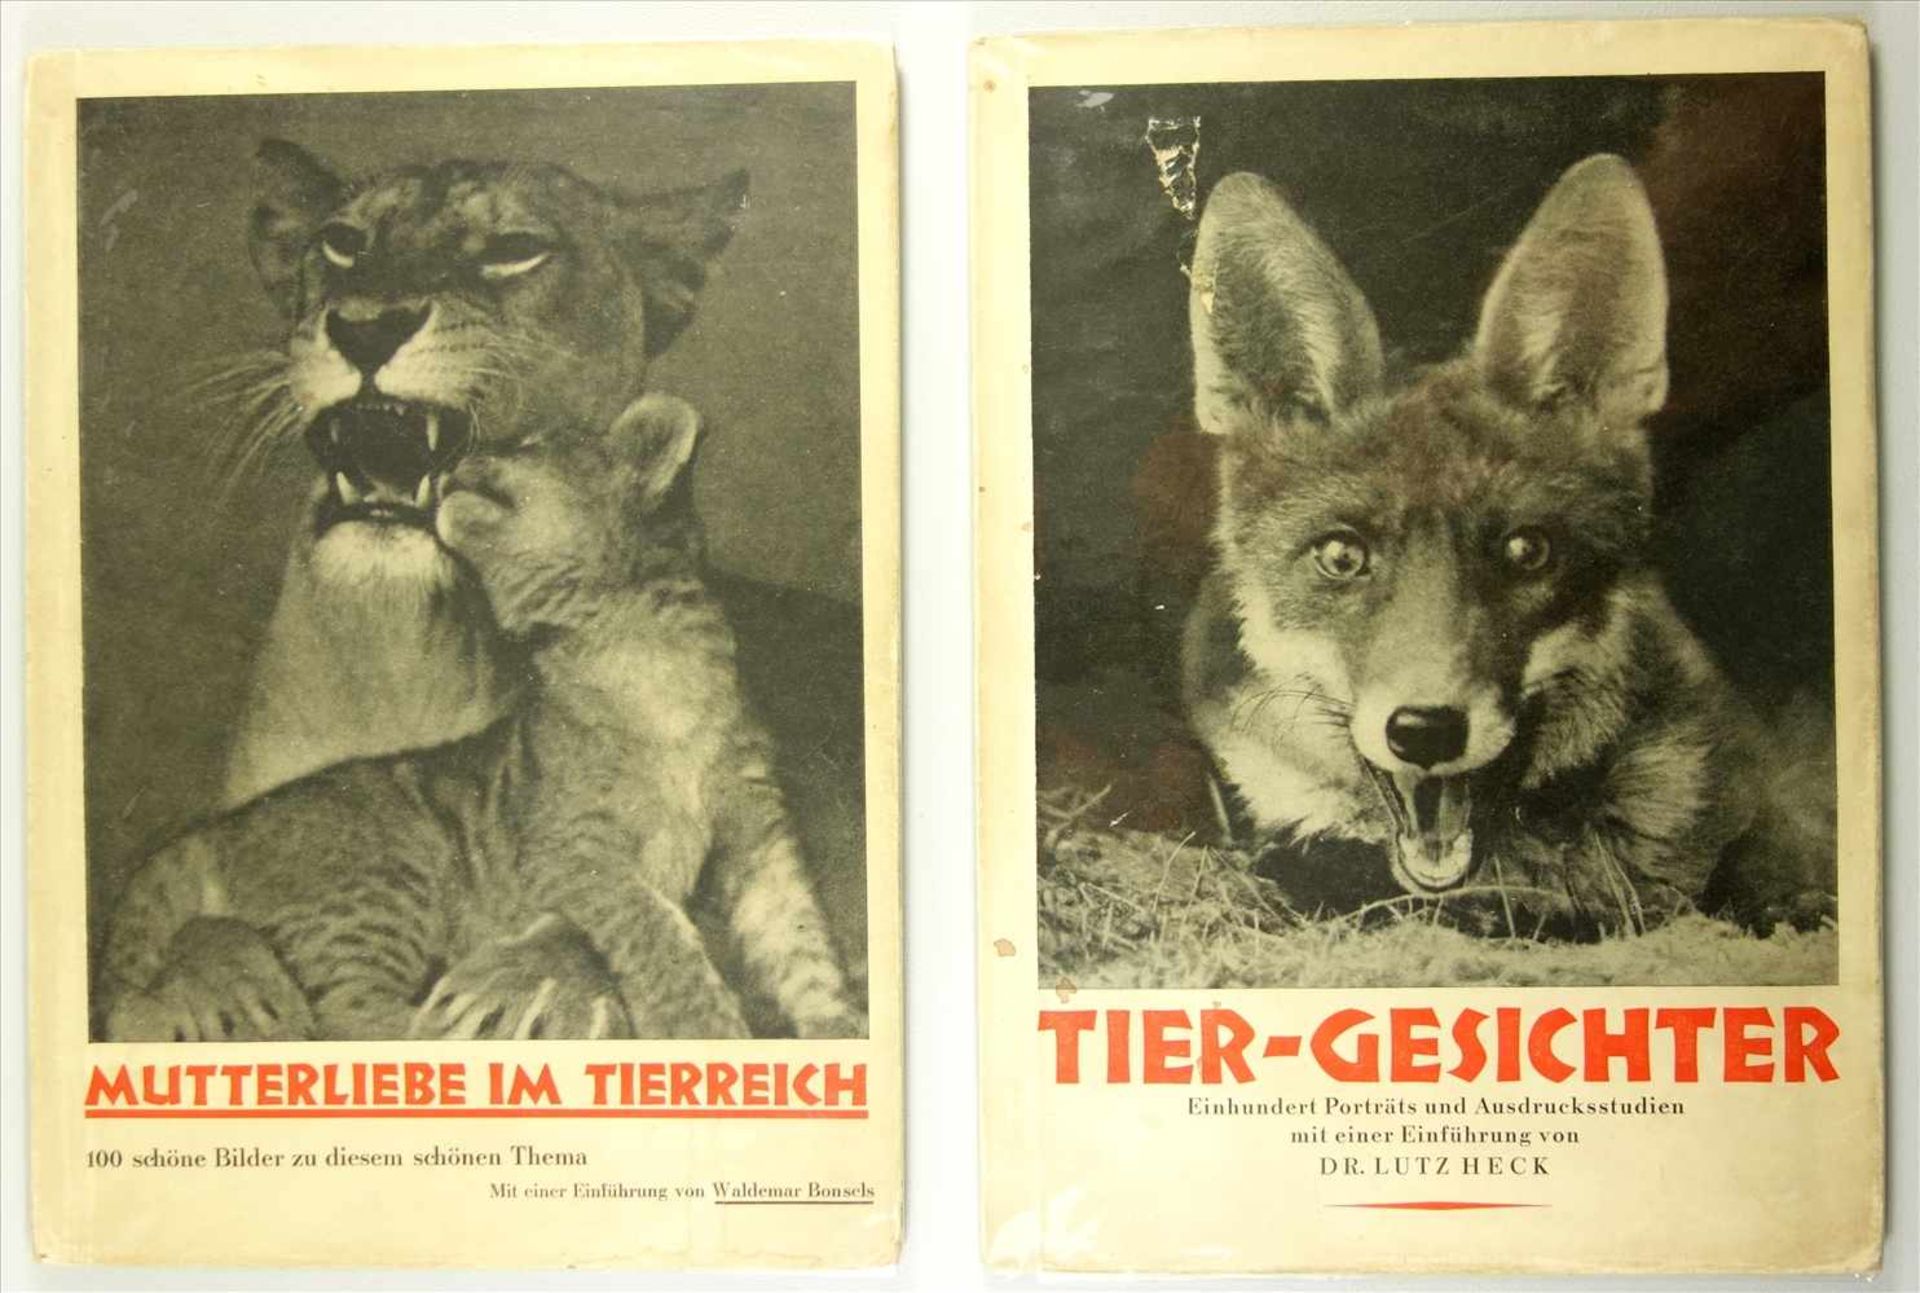 2 Bücher aus der Reihe "Tier-Bilderbände", Band II "Mutterliebe im Tierreich" und Band IV "Tier-